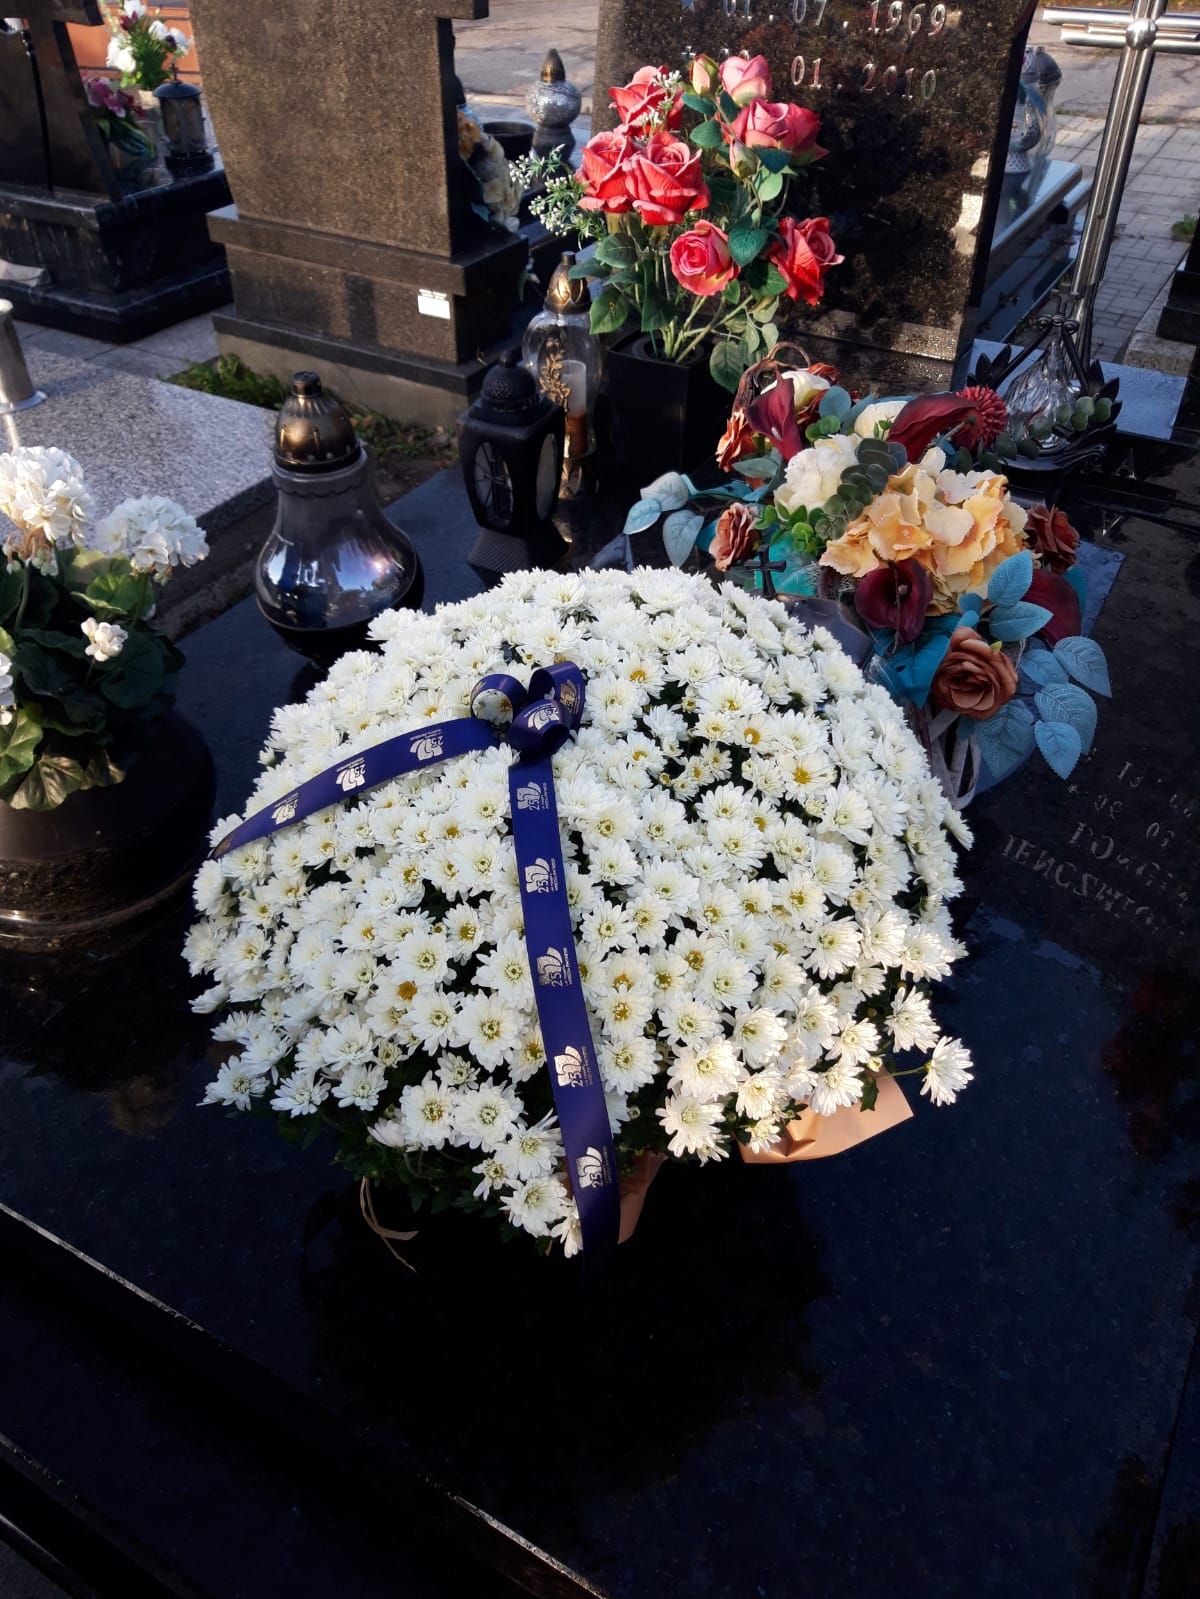 Doniczka białych chryzantem przepasana wstęgą z napisem 25 lat Powiatu Wodzisławskiego ustawiona na pomniku nagrobnym